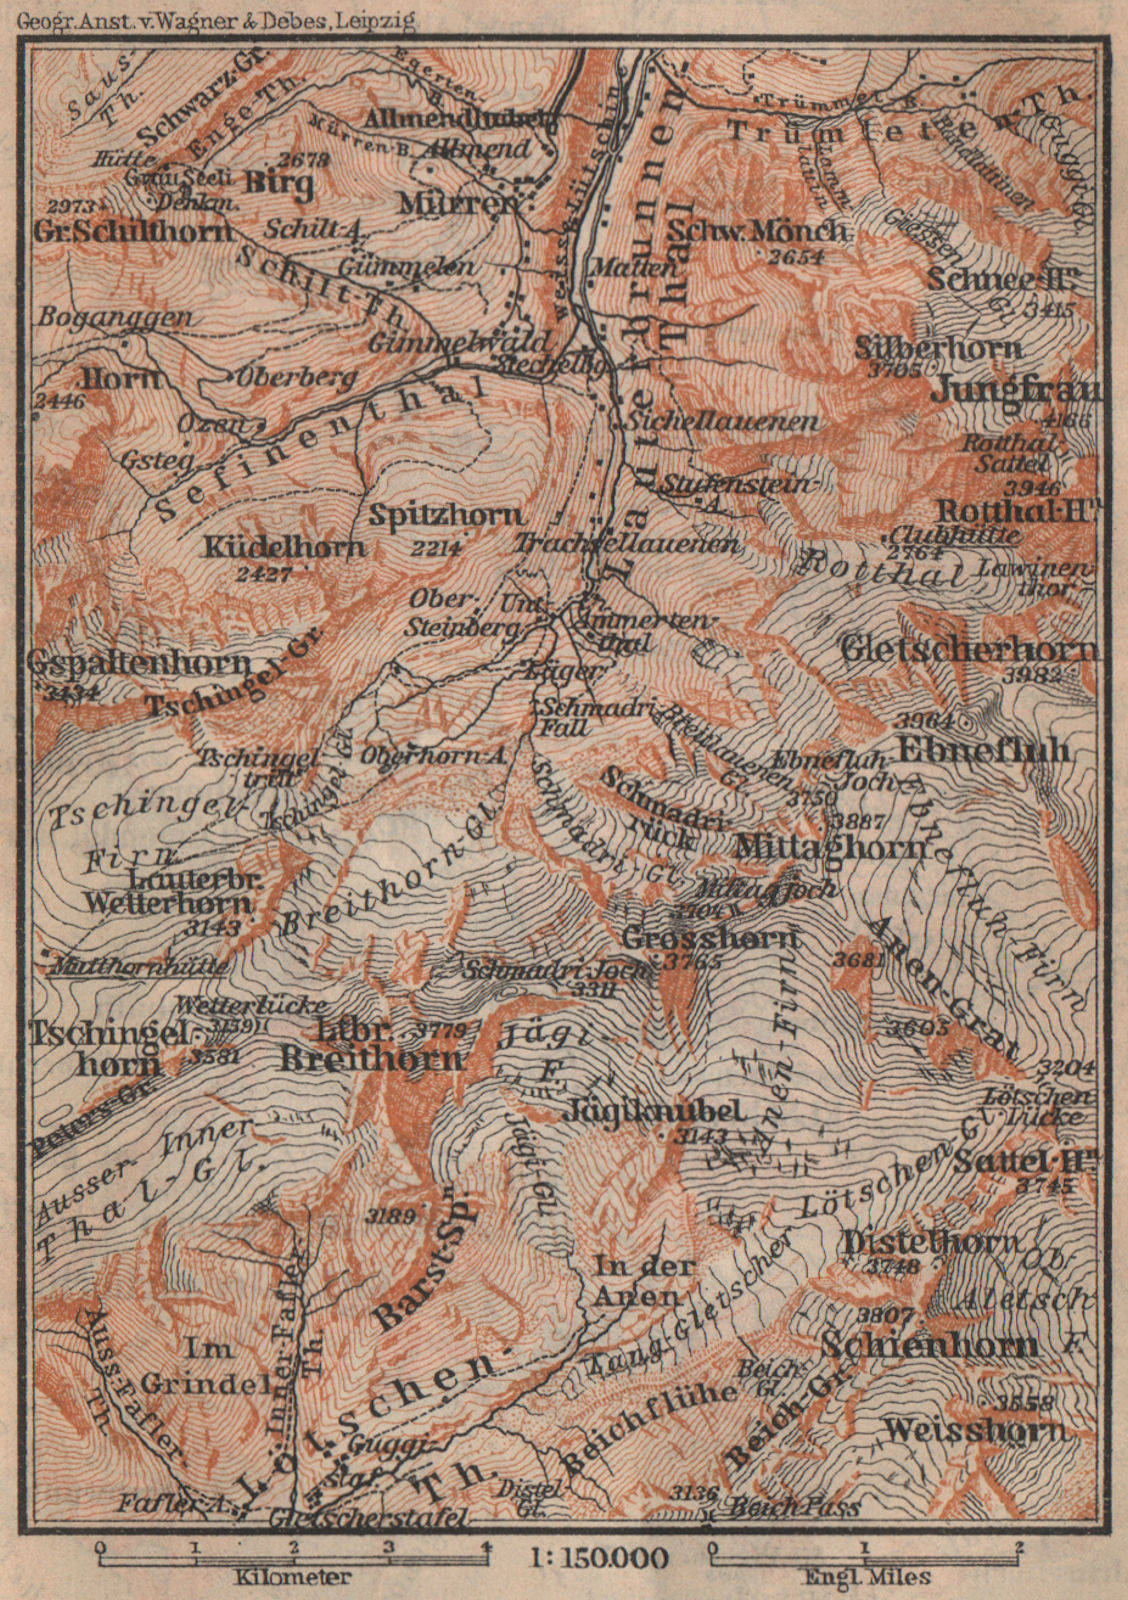 UPPER LAUTERBRUNNEN VALLEY/WALL. Mürren Grosshorn Breithorn. SMALL 1907 map